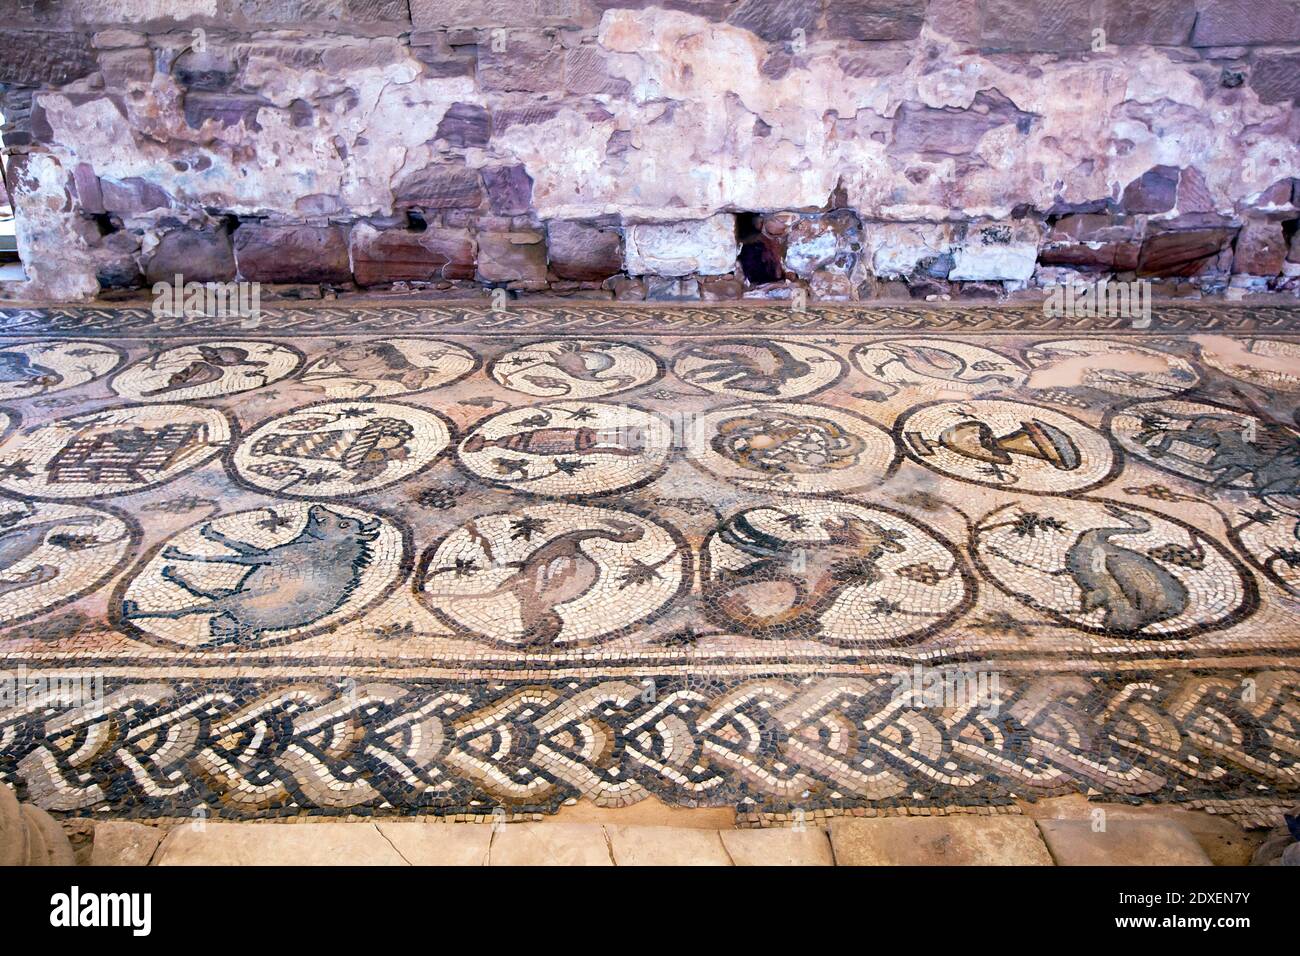 El pasillo norte de la iglesia de Petra mostrando mosaicos que datan del siglo 5 AD. Hay 84 medallones en tres filas rodeadas por la frontera del clan. Foto de stock